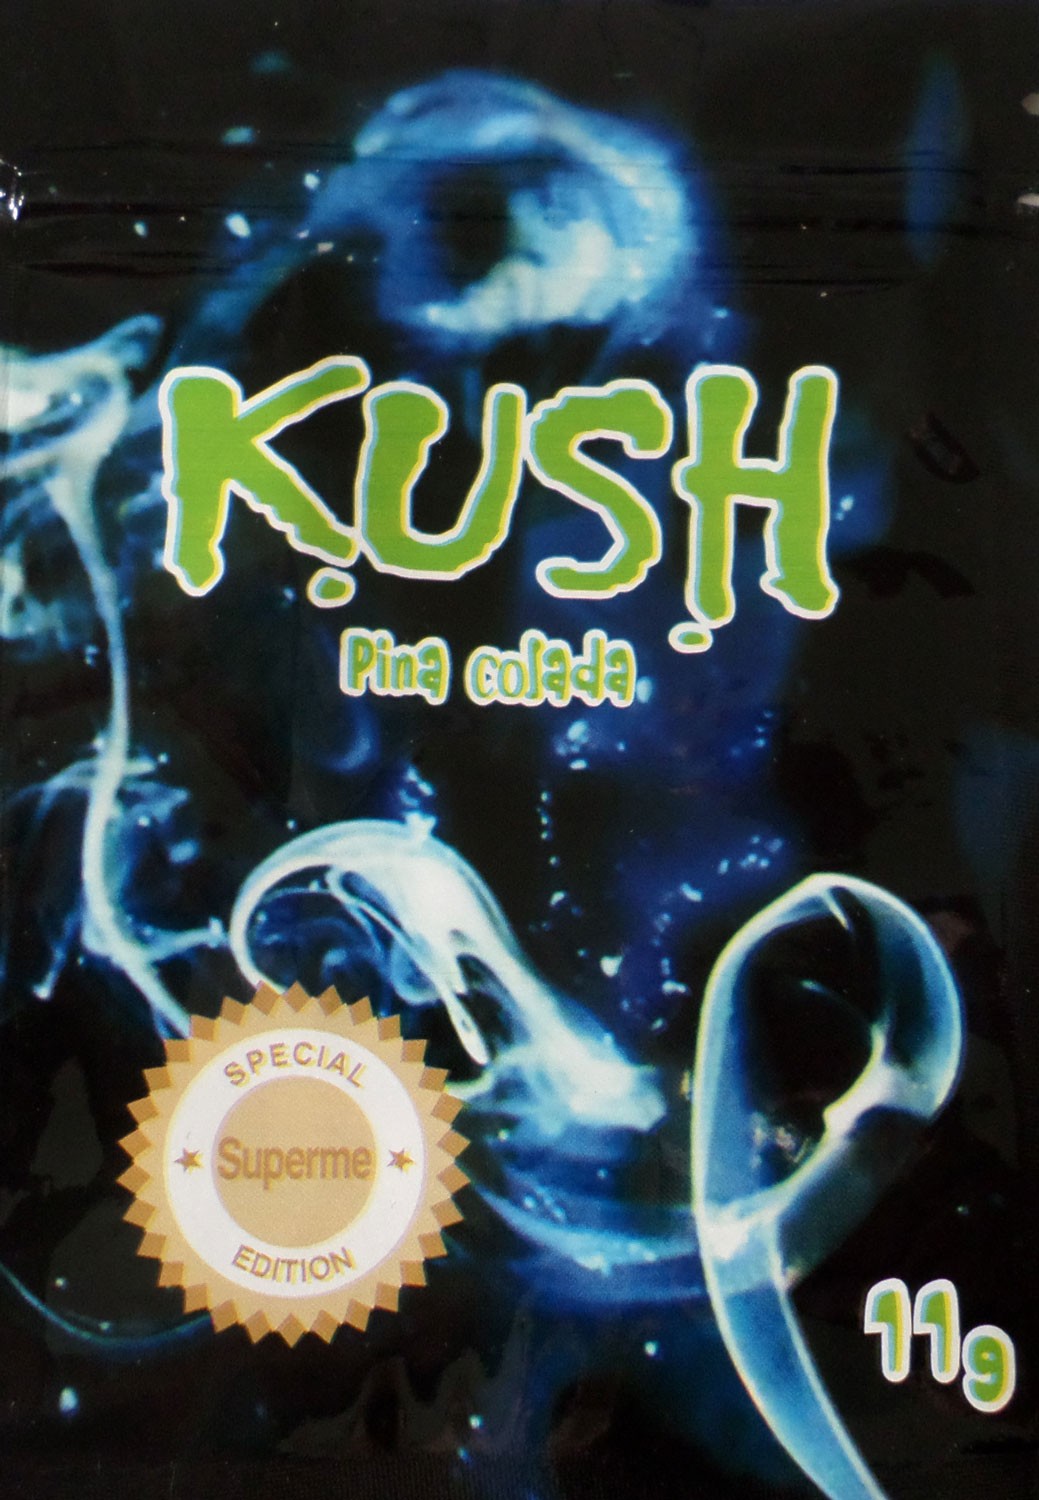 Kush 11g Pina colada incense